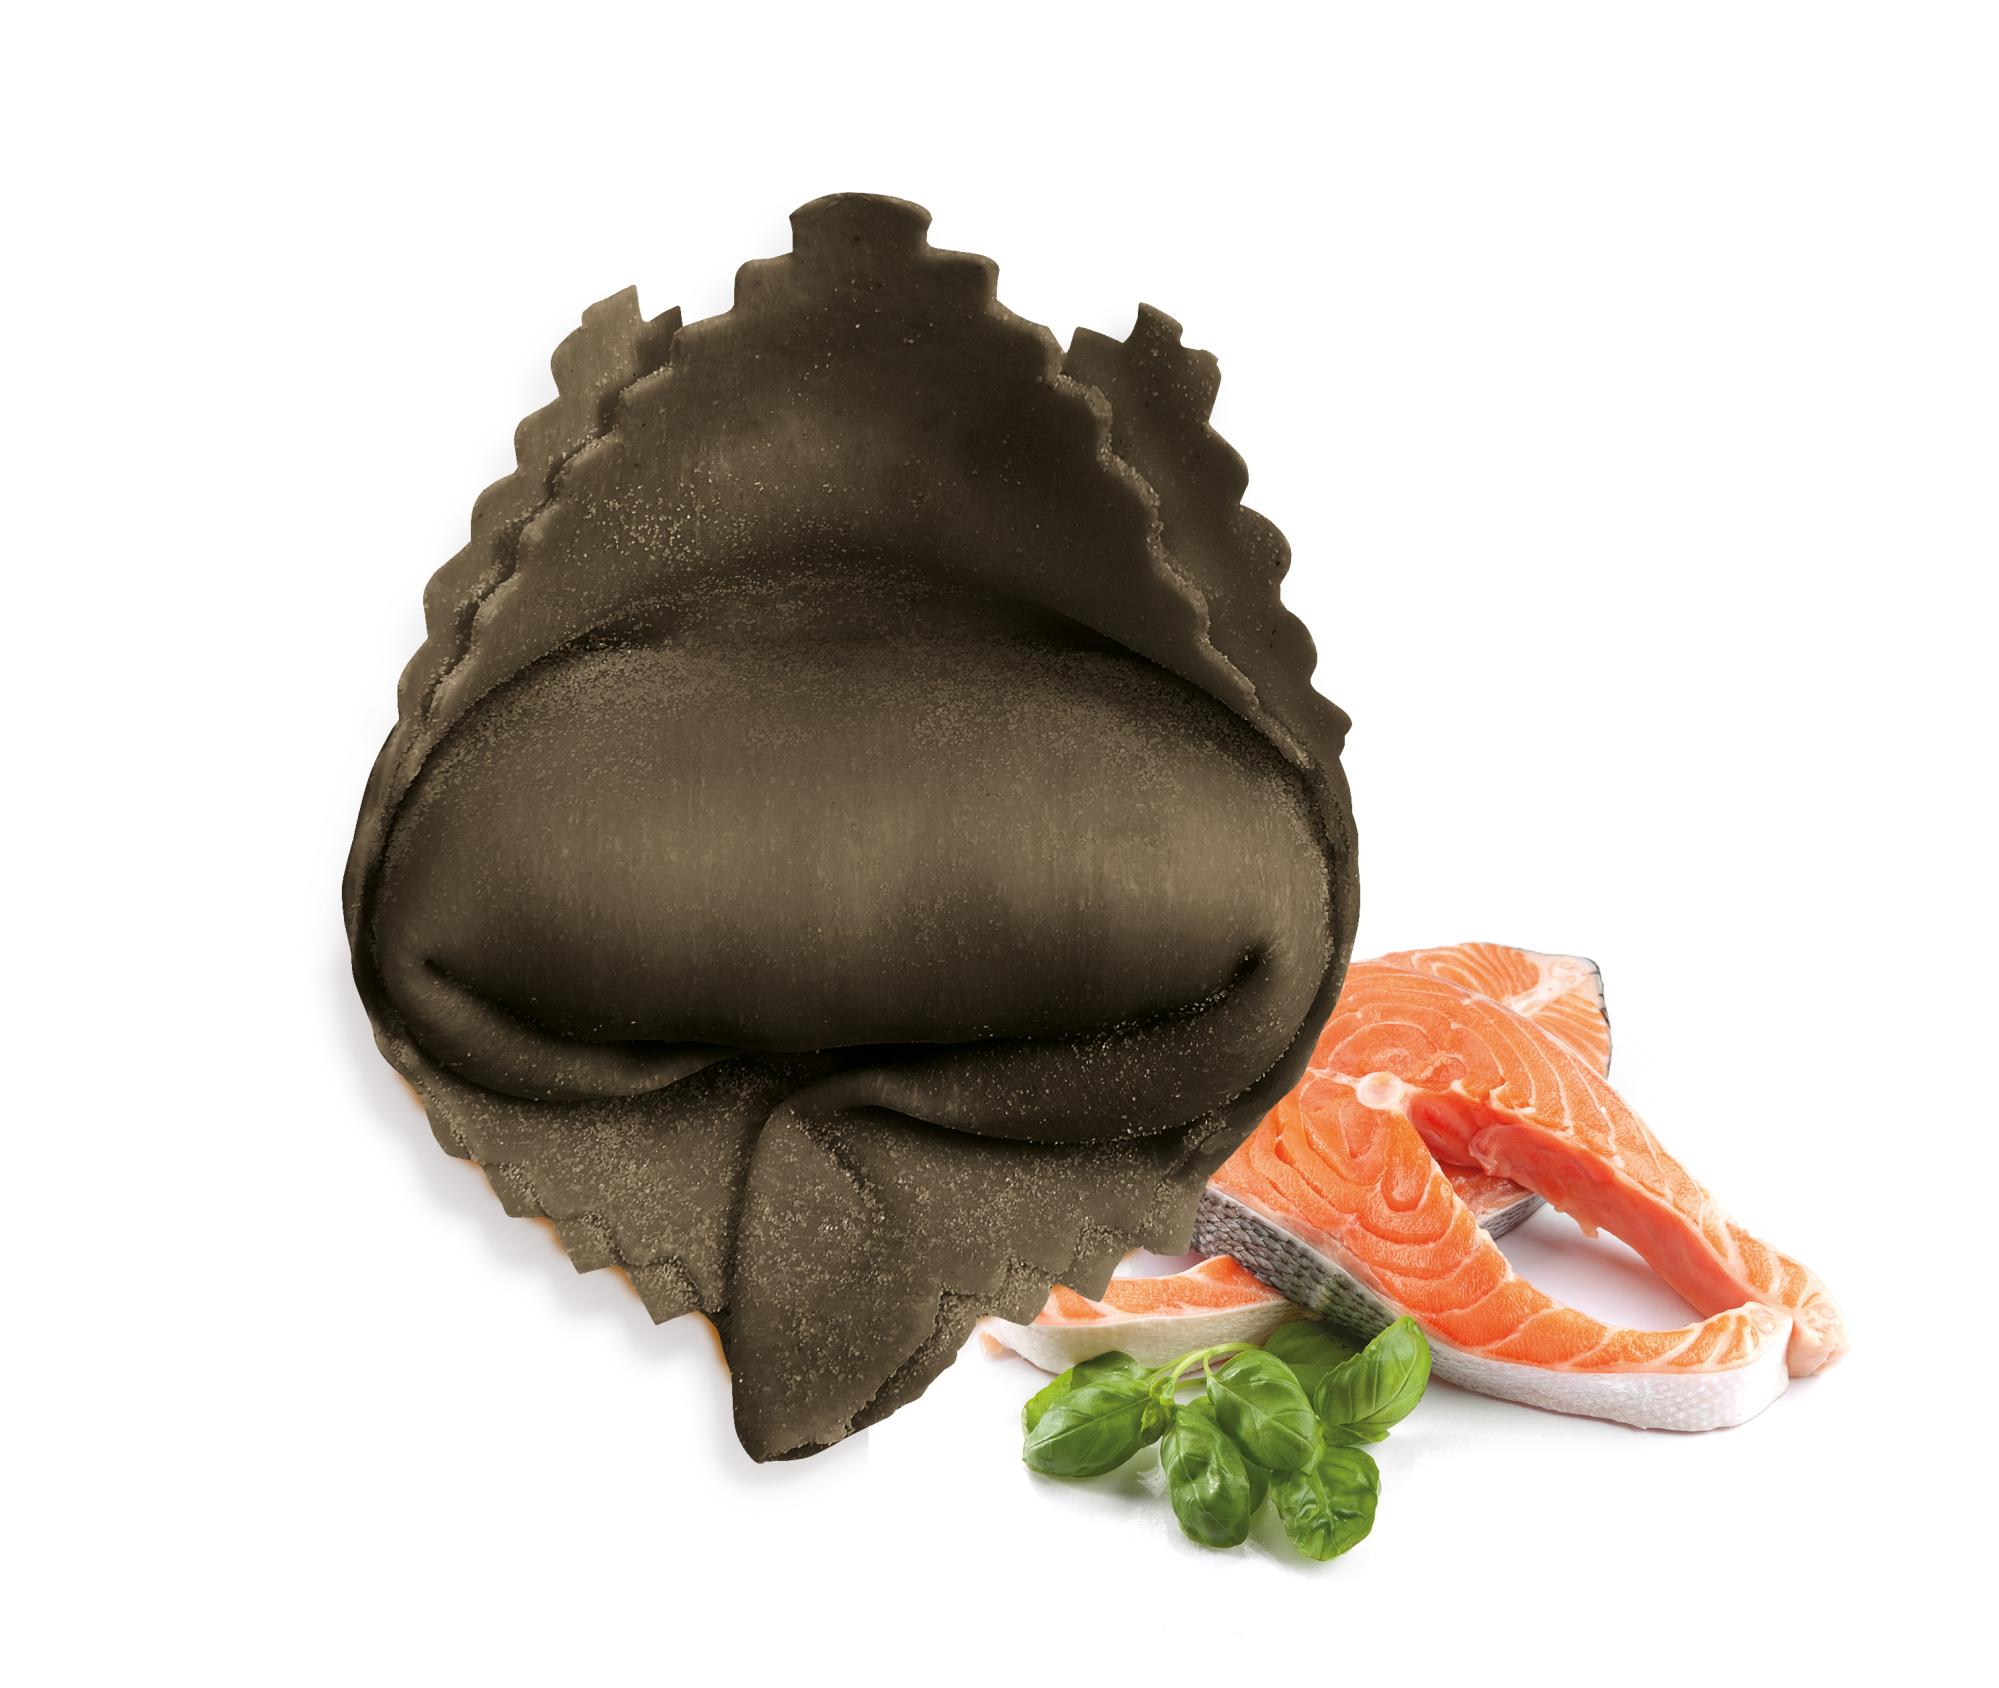 FONTANETO Ravioli Tortellone ripieno salmone (26~ x 38 g = 1 kg) TMC 14 giorni - 2 minuti di cottura